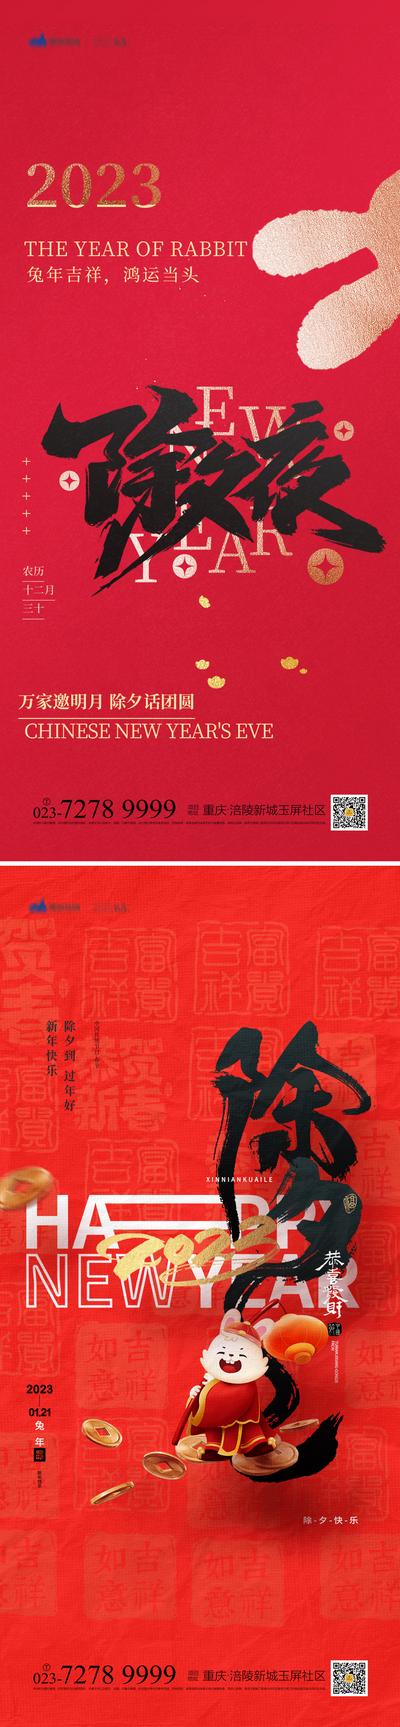 【南门网】海报 中国传统节日 除夕 新春 兔子 红色 喜庆